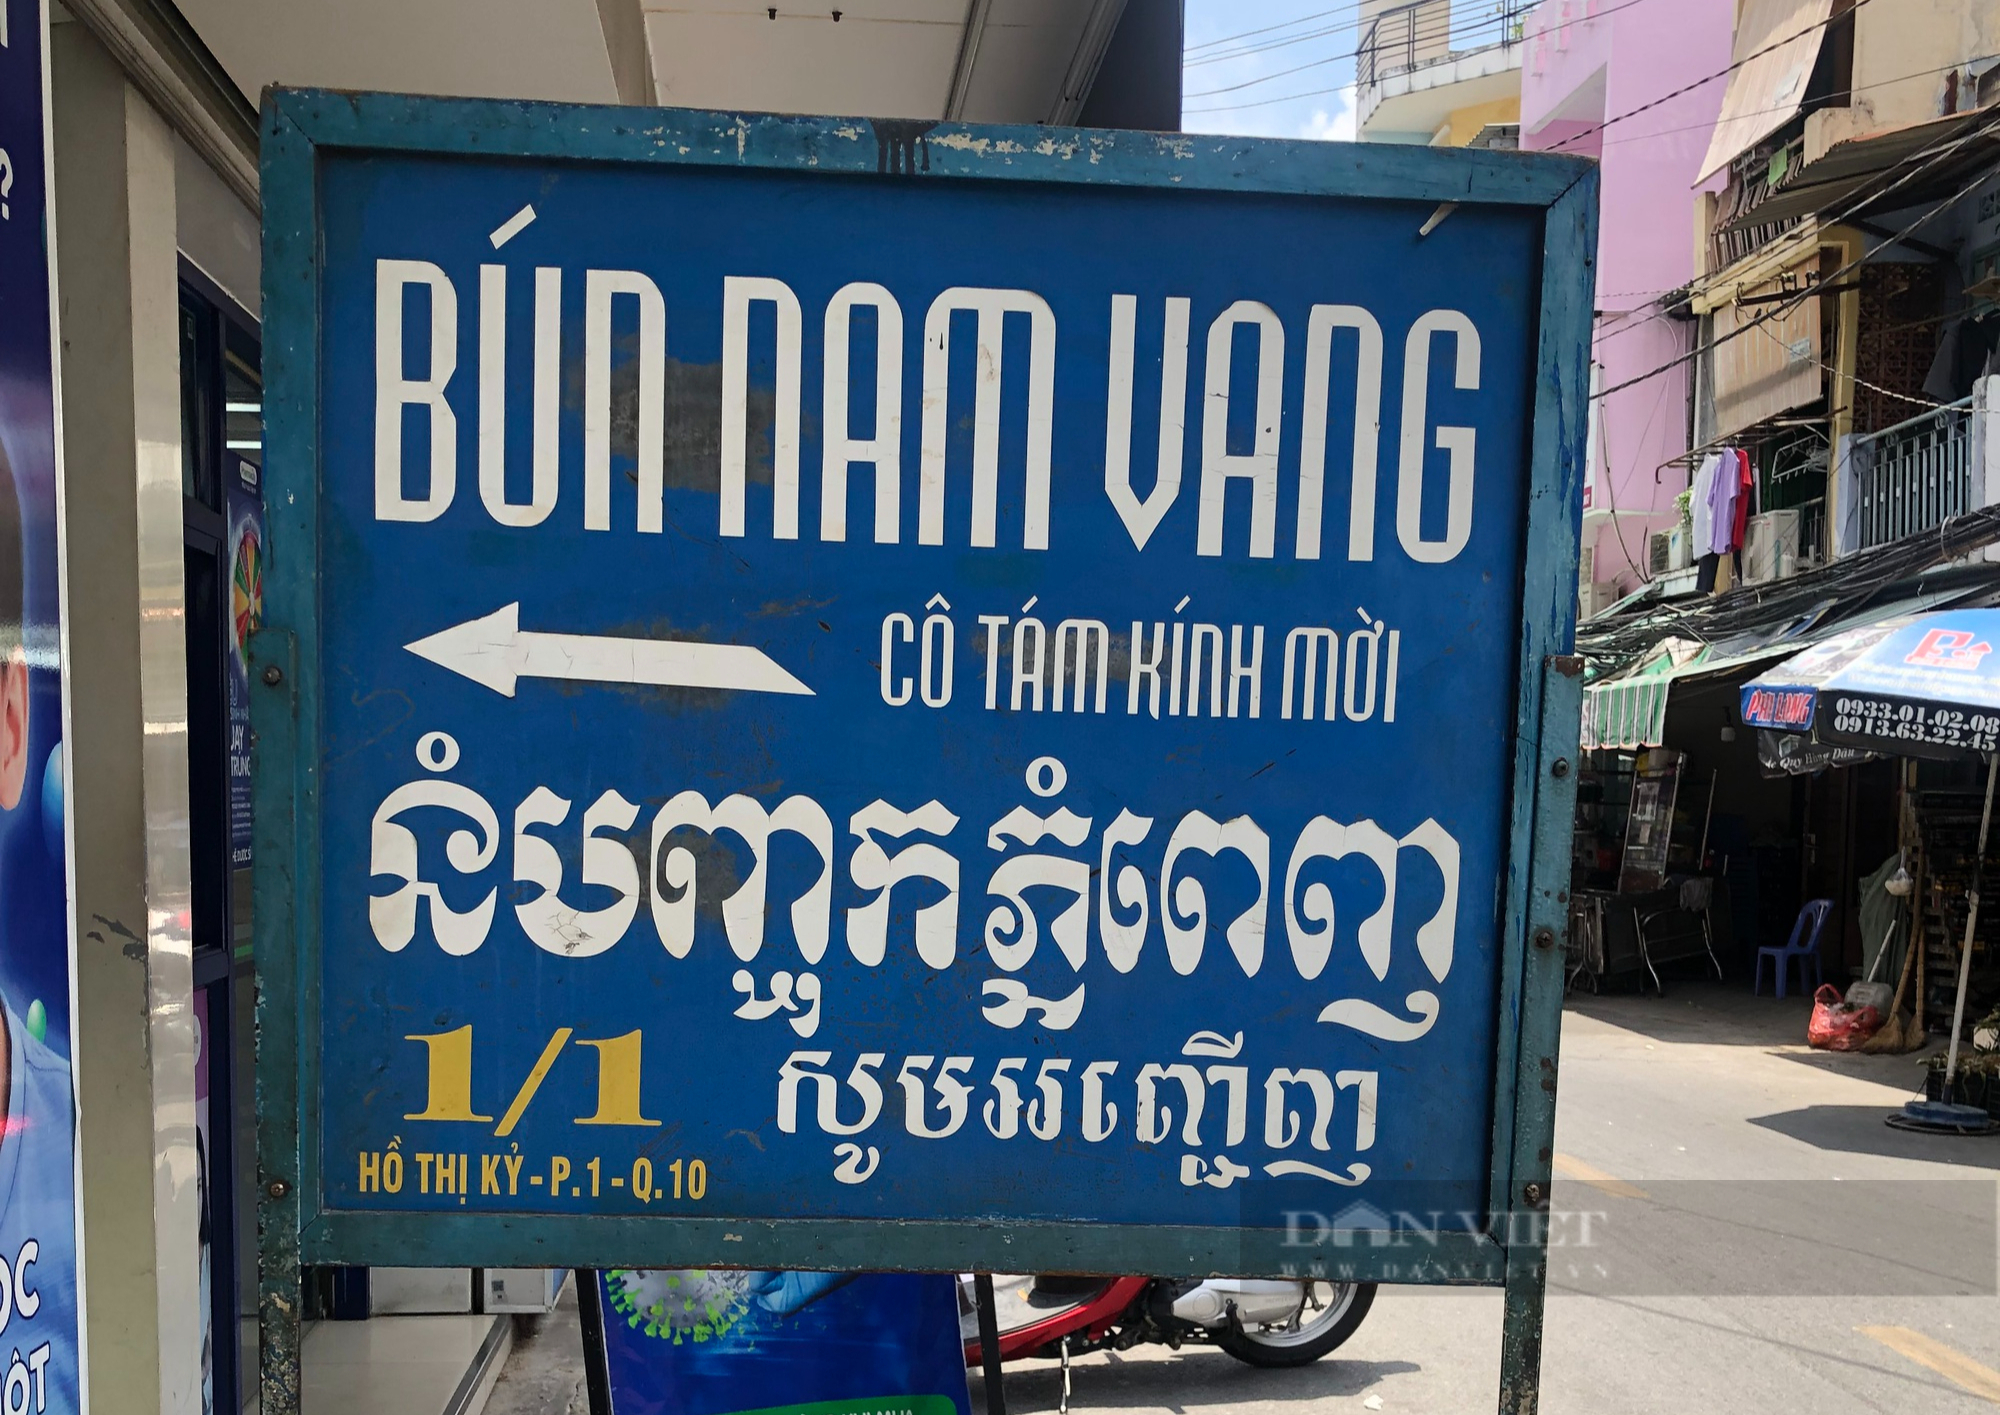 Bản hiệu của bổn tiệm bằng song ngữ Việt - Khmer